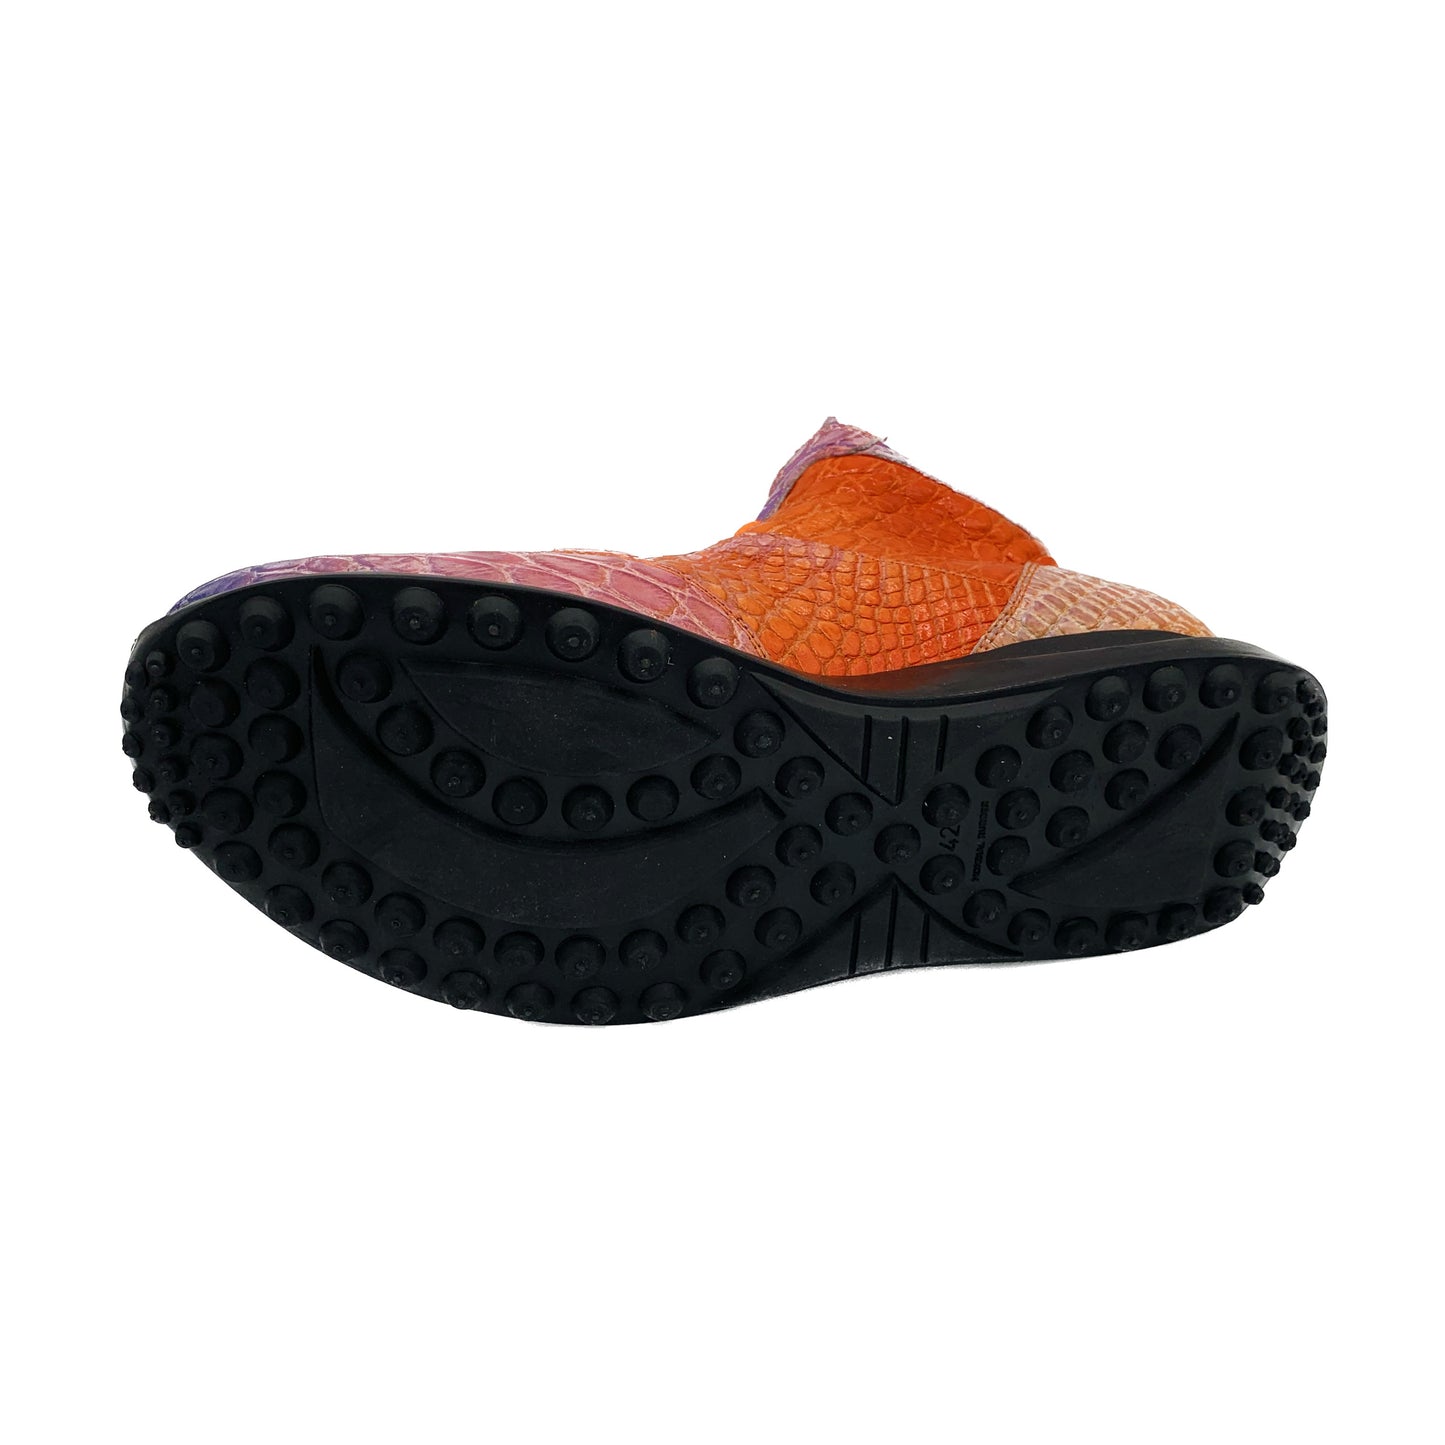 Mauri 8510 FC Multi Color Apricot Fade Hi-Top Sneaker